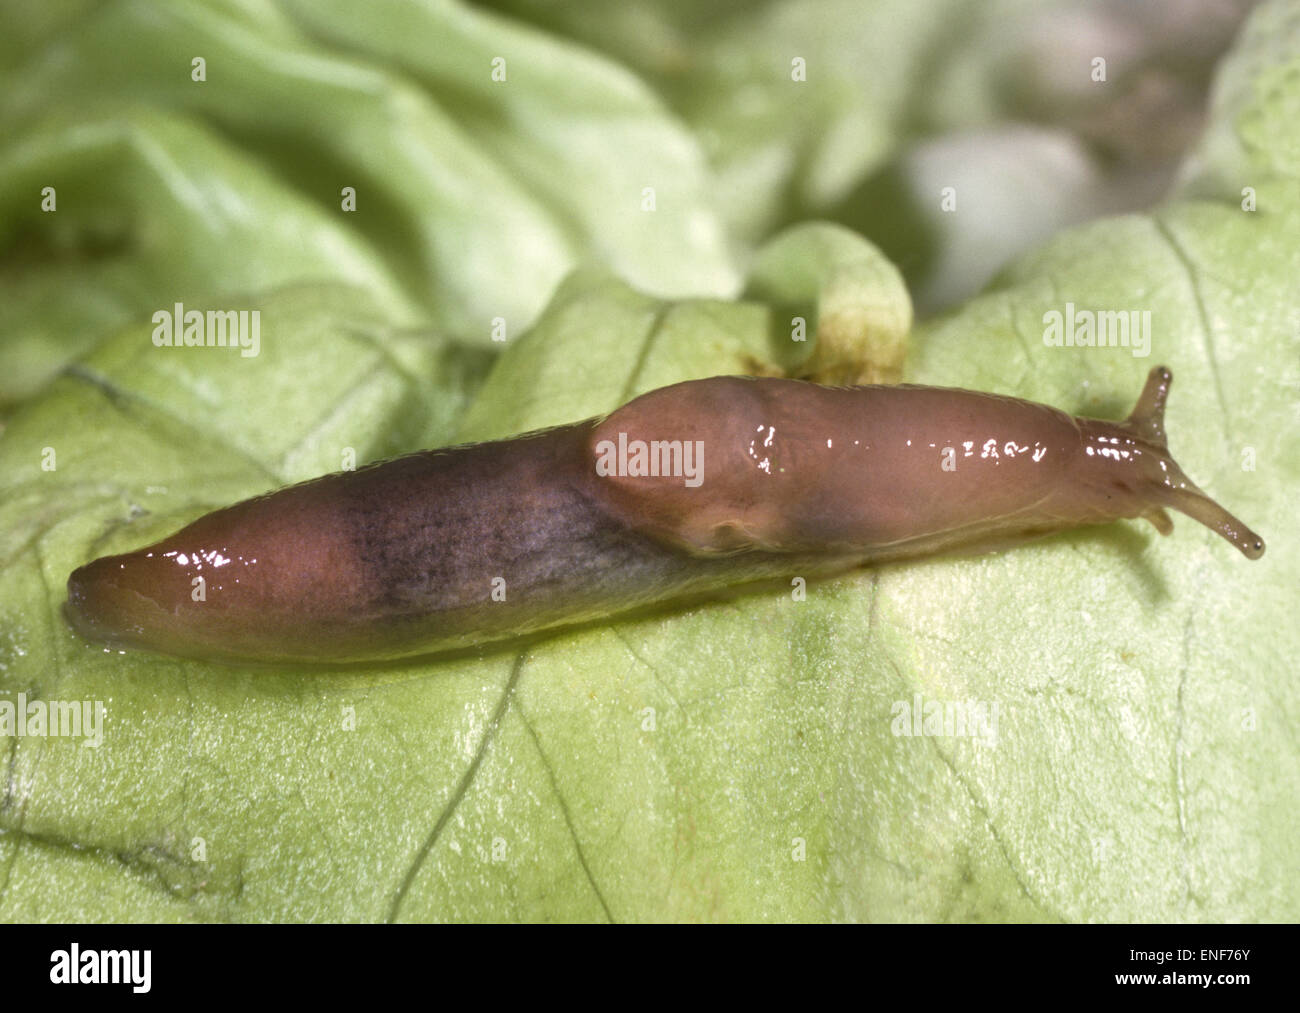 Brown Field Slug - Deroceras panormitanum Stock Photo